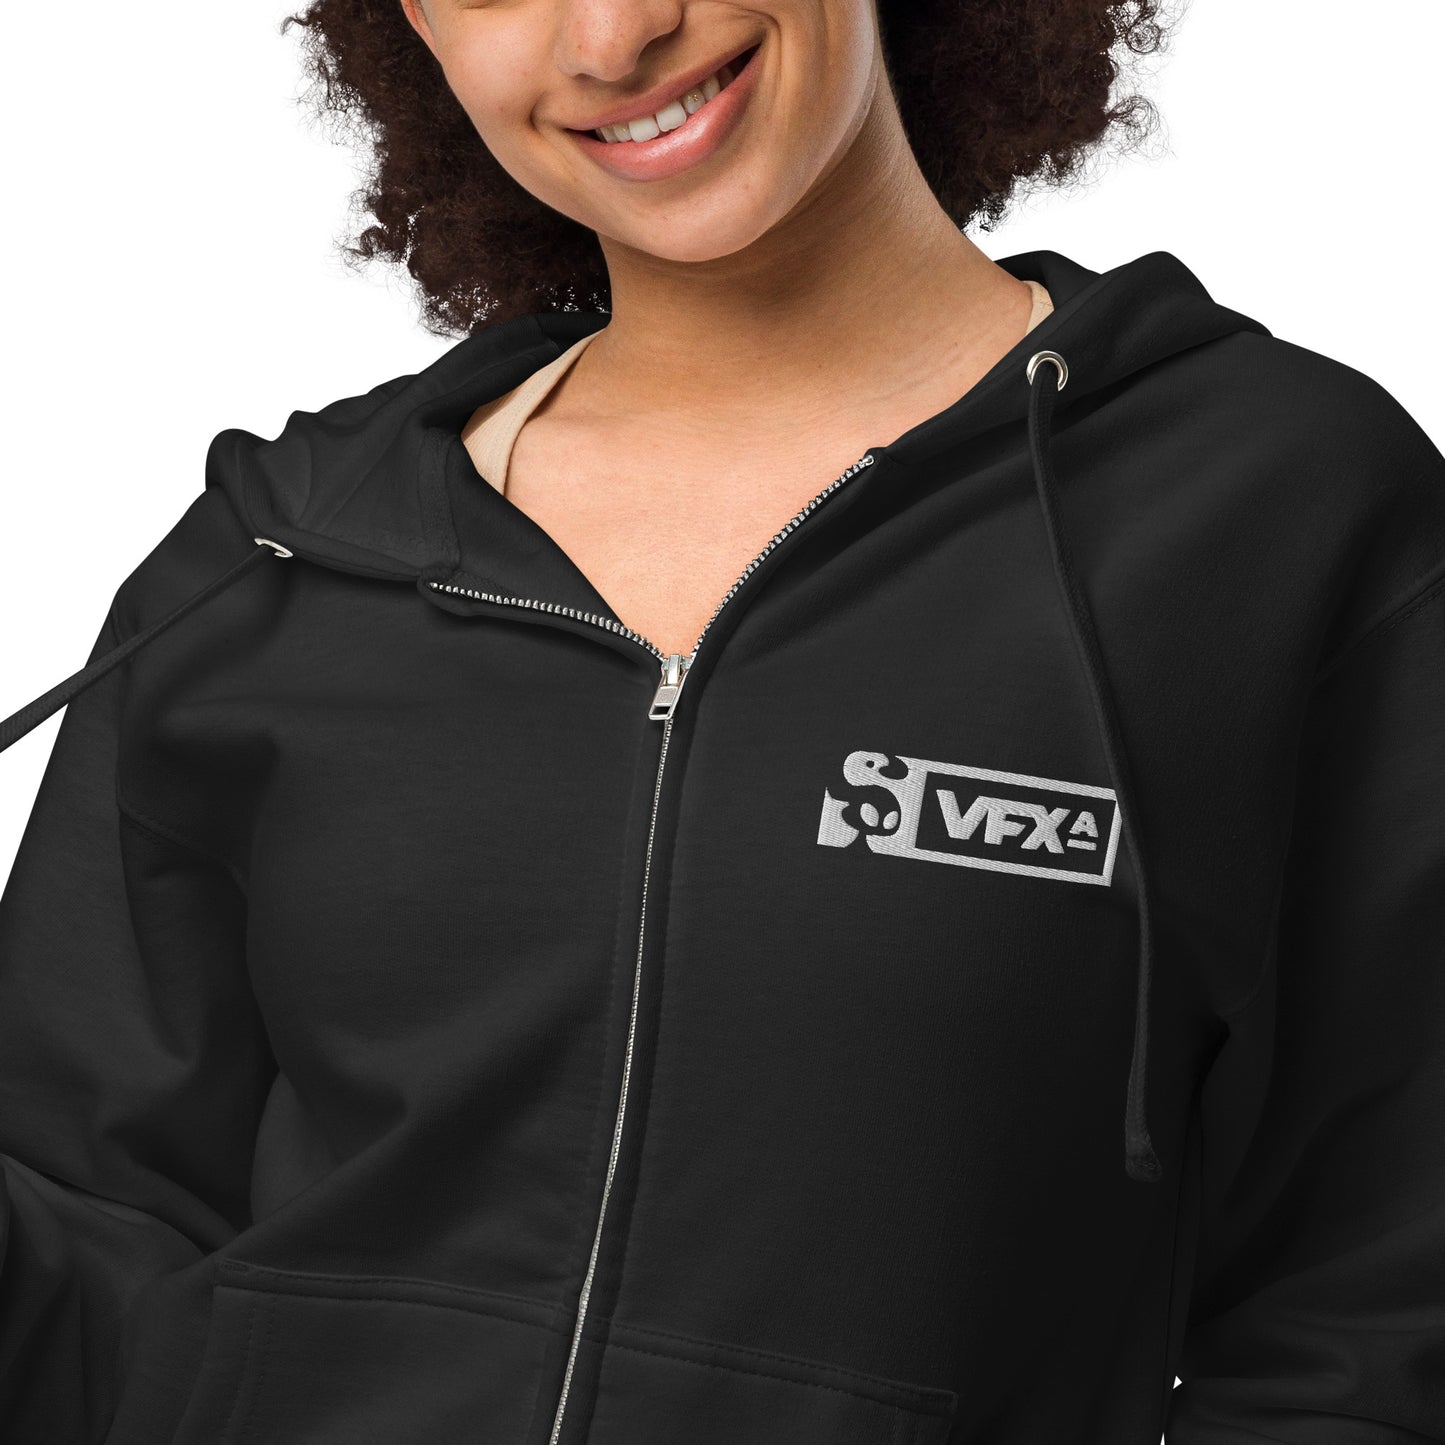 Unisex fleece zip up hoodie: Aquanna